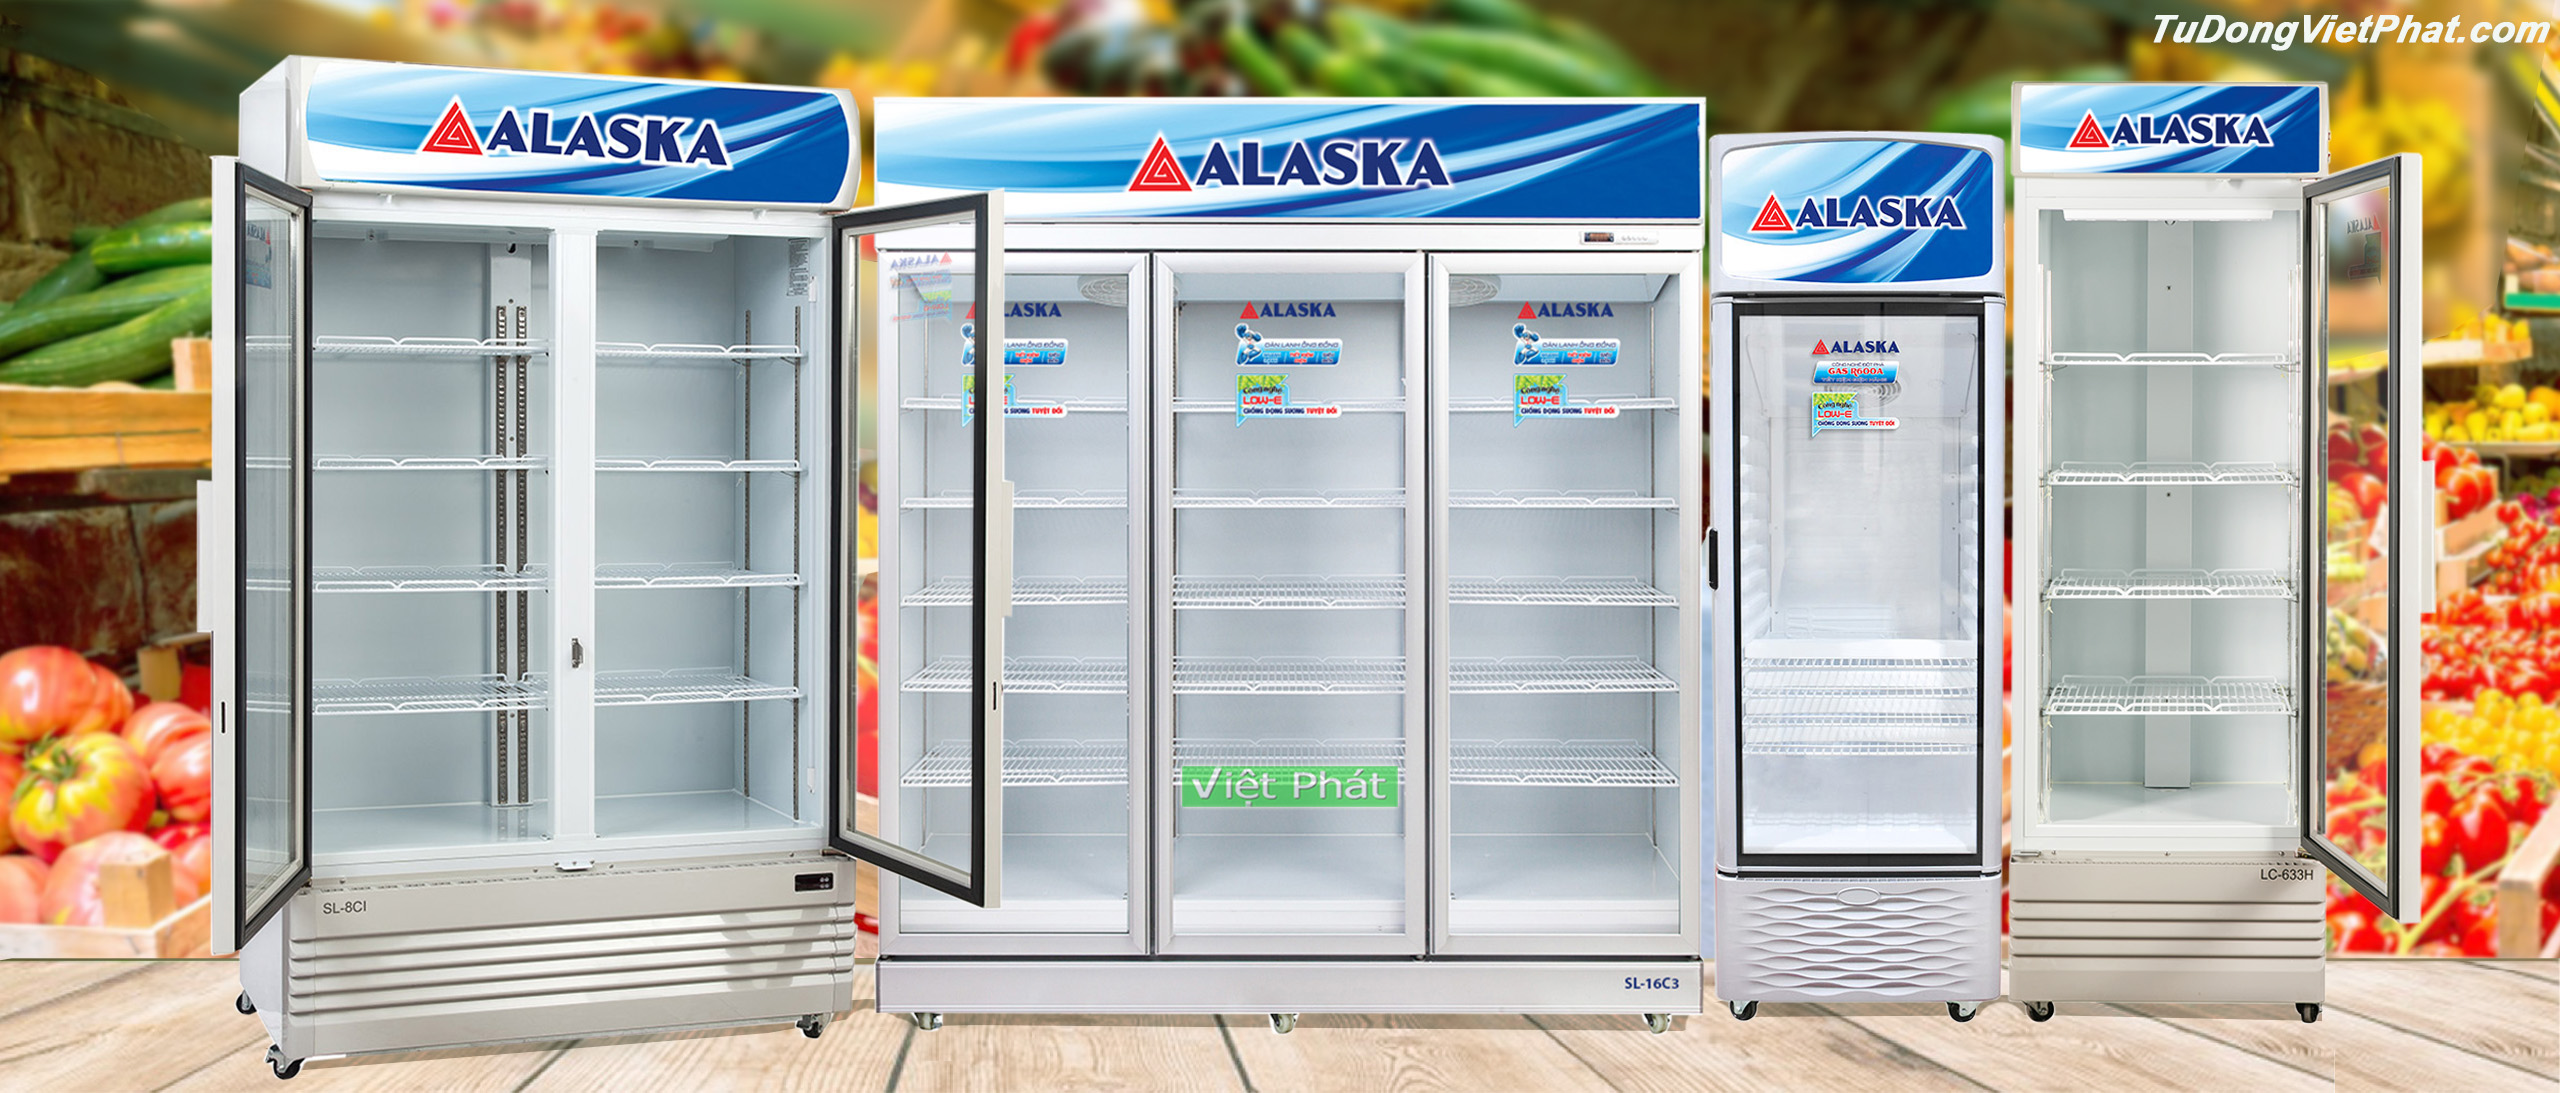 Đánh giá máy lạnh Alaska có tốt không, loại nào phù hợp?